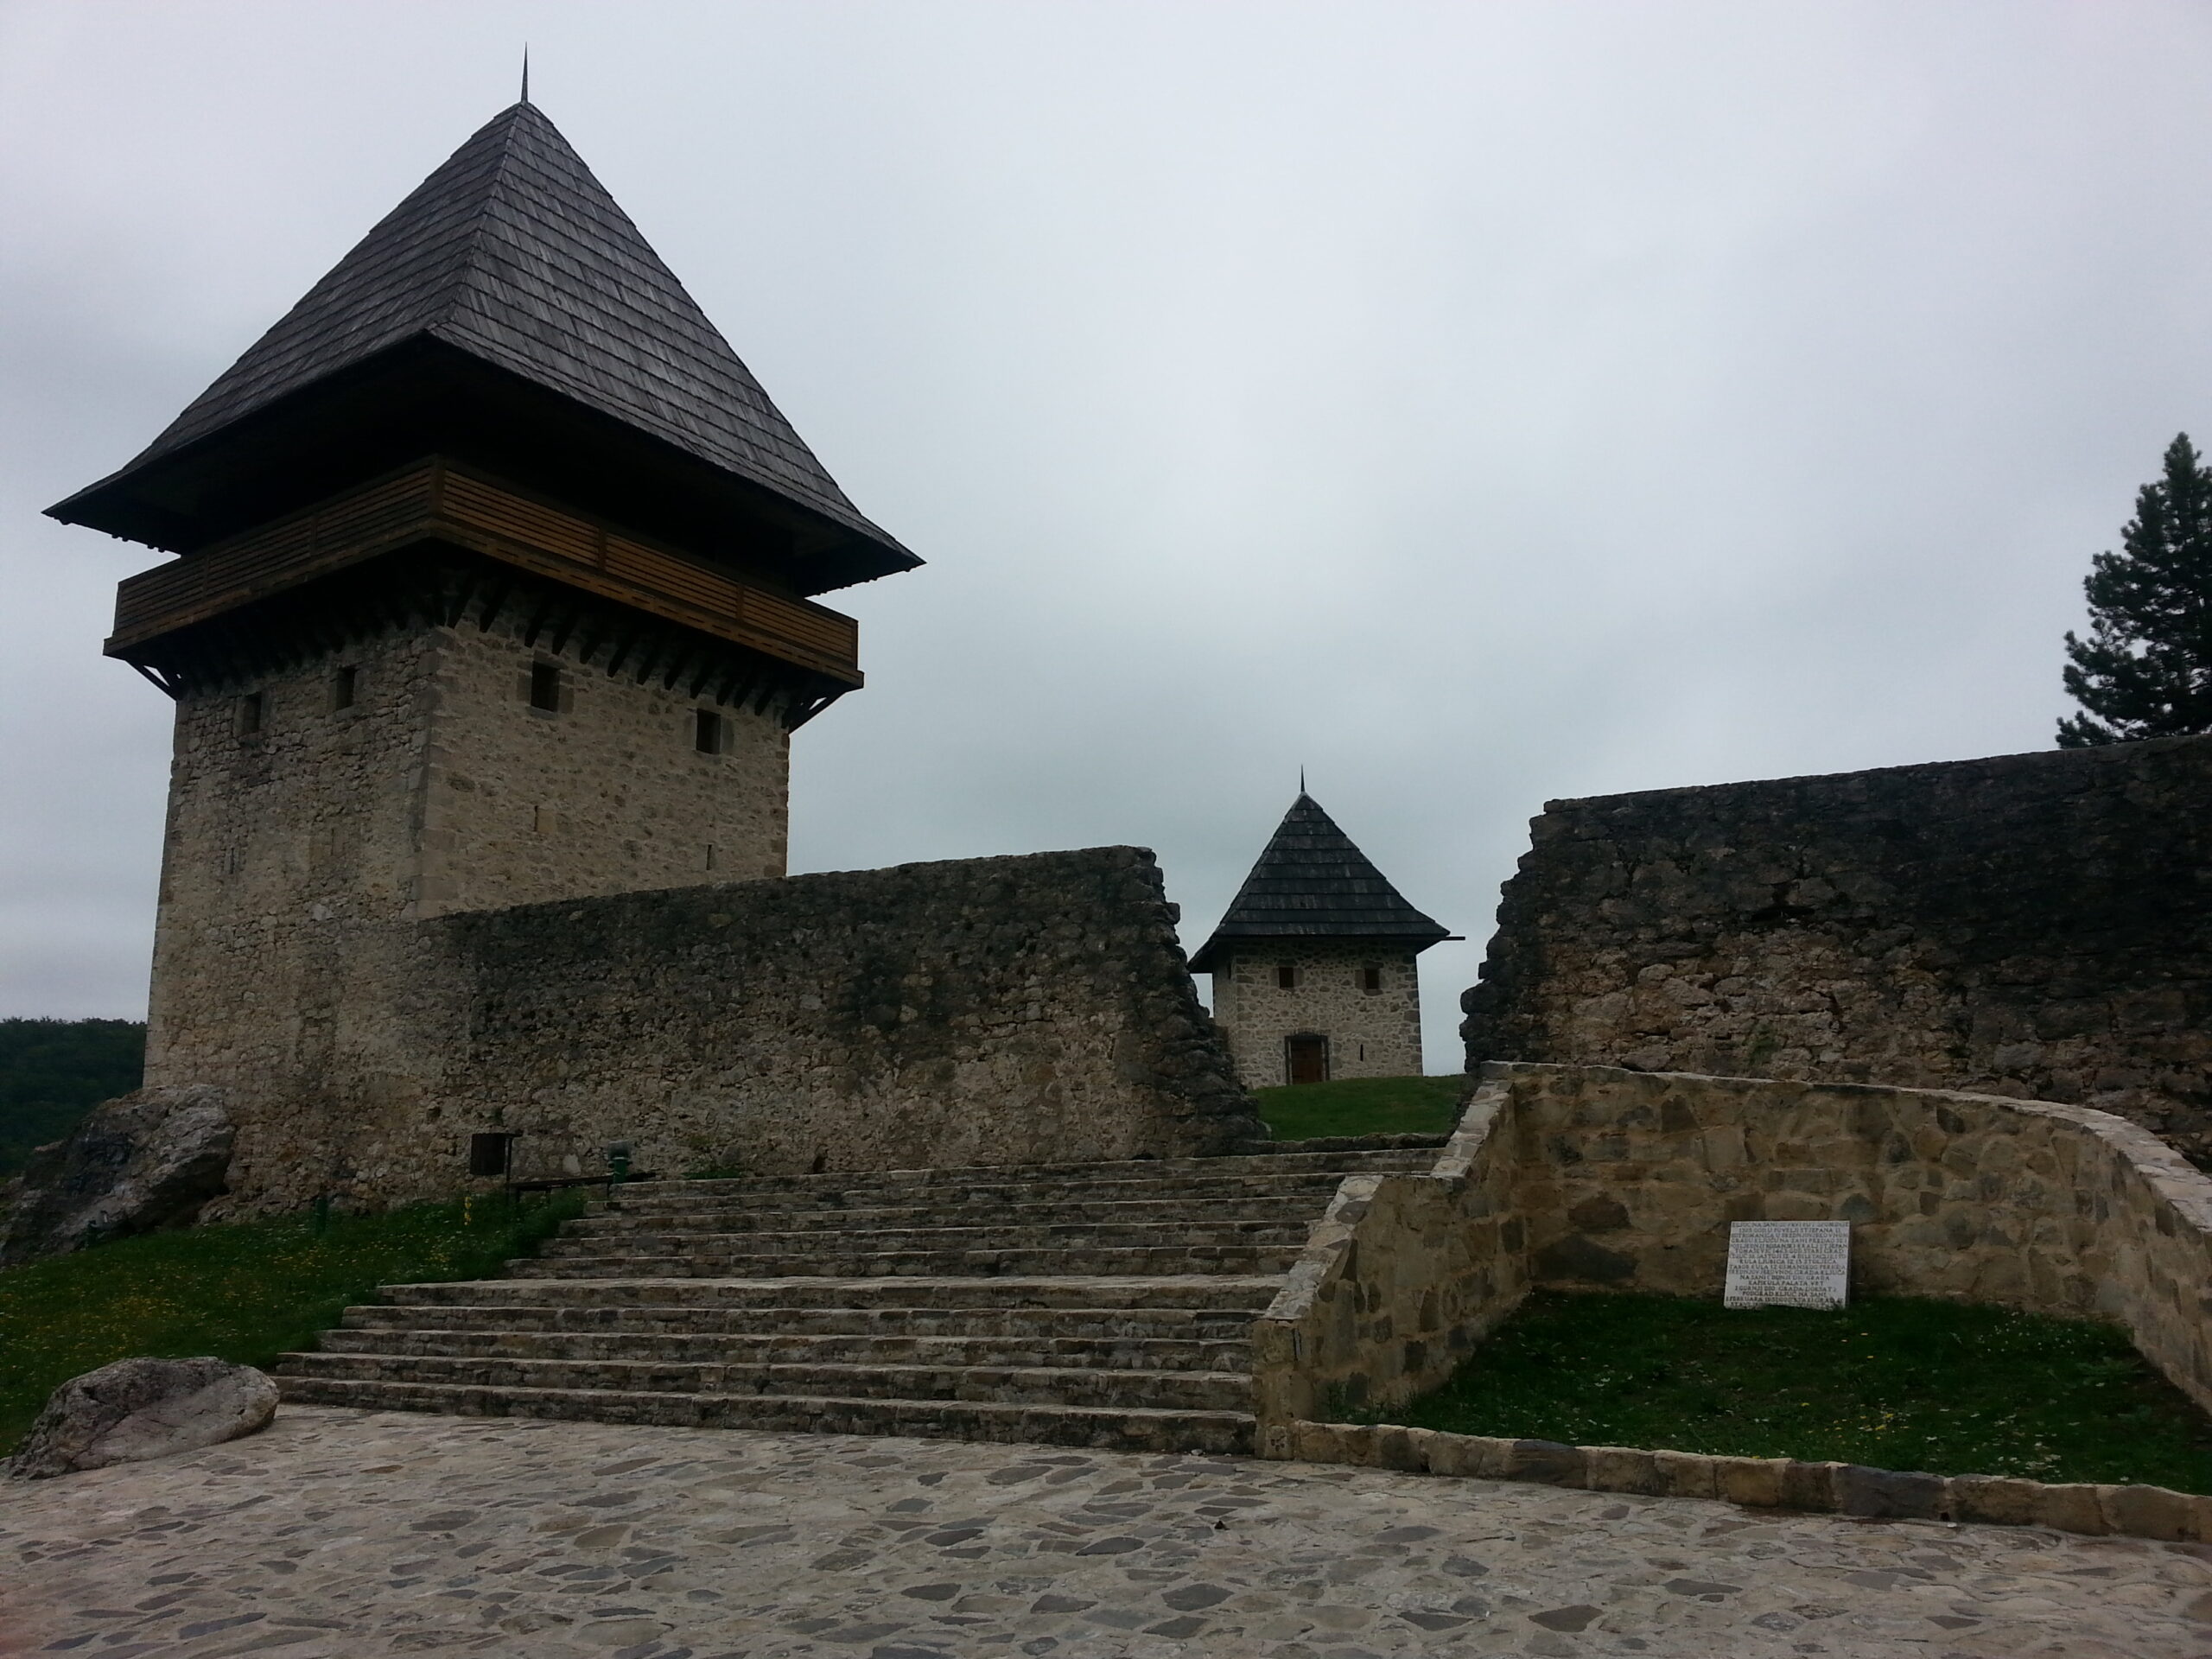  Ključ – jedina korona free zona u Bosni i Hercegovini